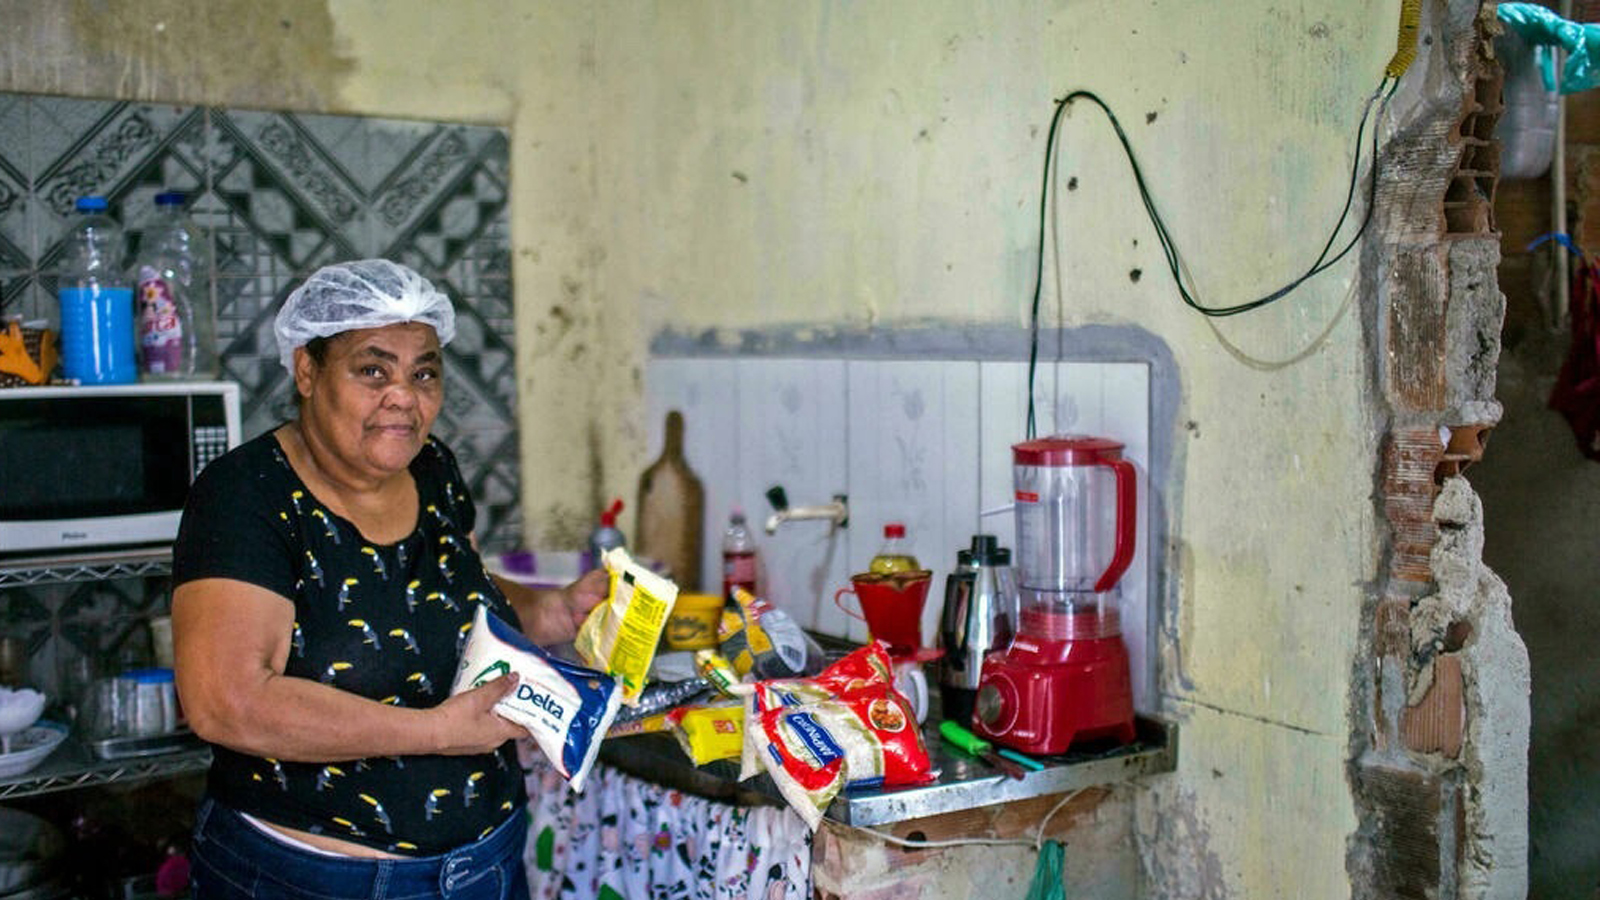 إيتا ماريا دي سوزا ، 59 عامًا ، تقف مع طردها الغذائي الأساسي الذي تبرعت به منظمة 'Acao da Cidadania' (حركة المواطنة) غير الحكومية ، خلال حدث 'Natal sem Fome' (عيد الميلاد بدون جوع) في ريو دي جانيرو